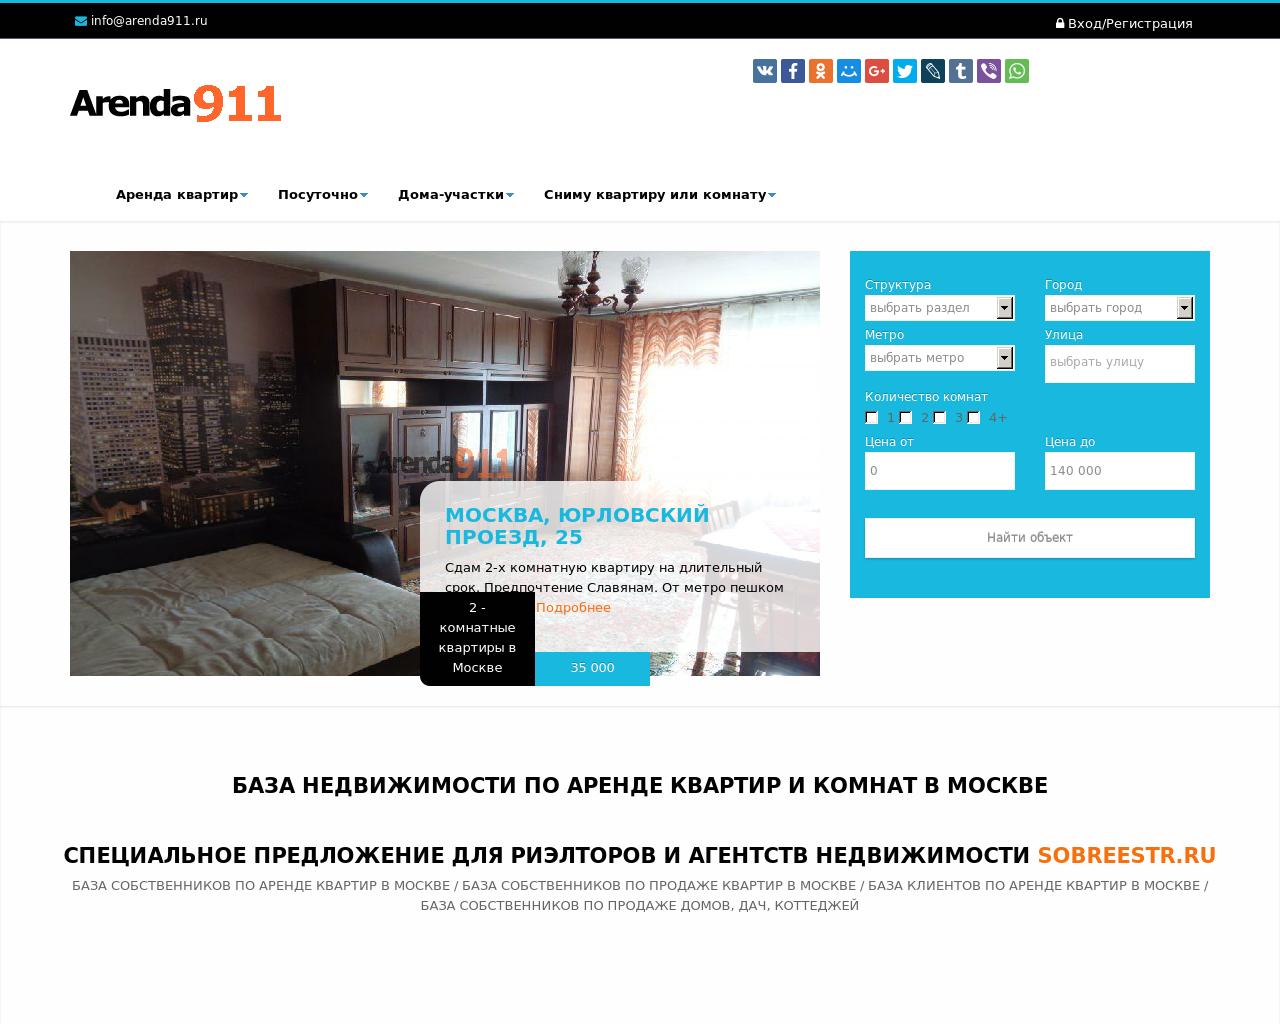 Изображение сайта arenda911.ru в разрешении 1280x1024